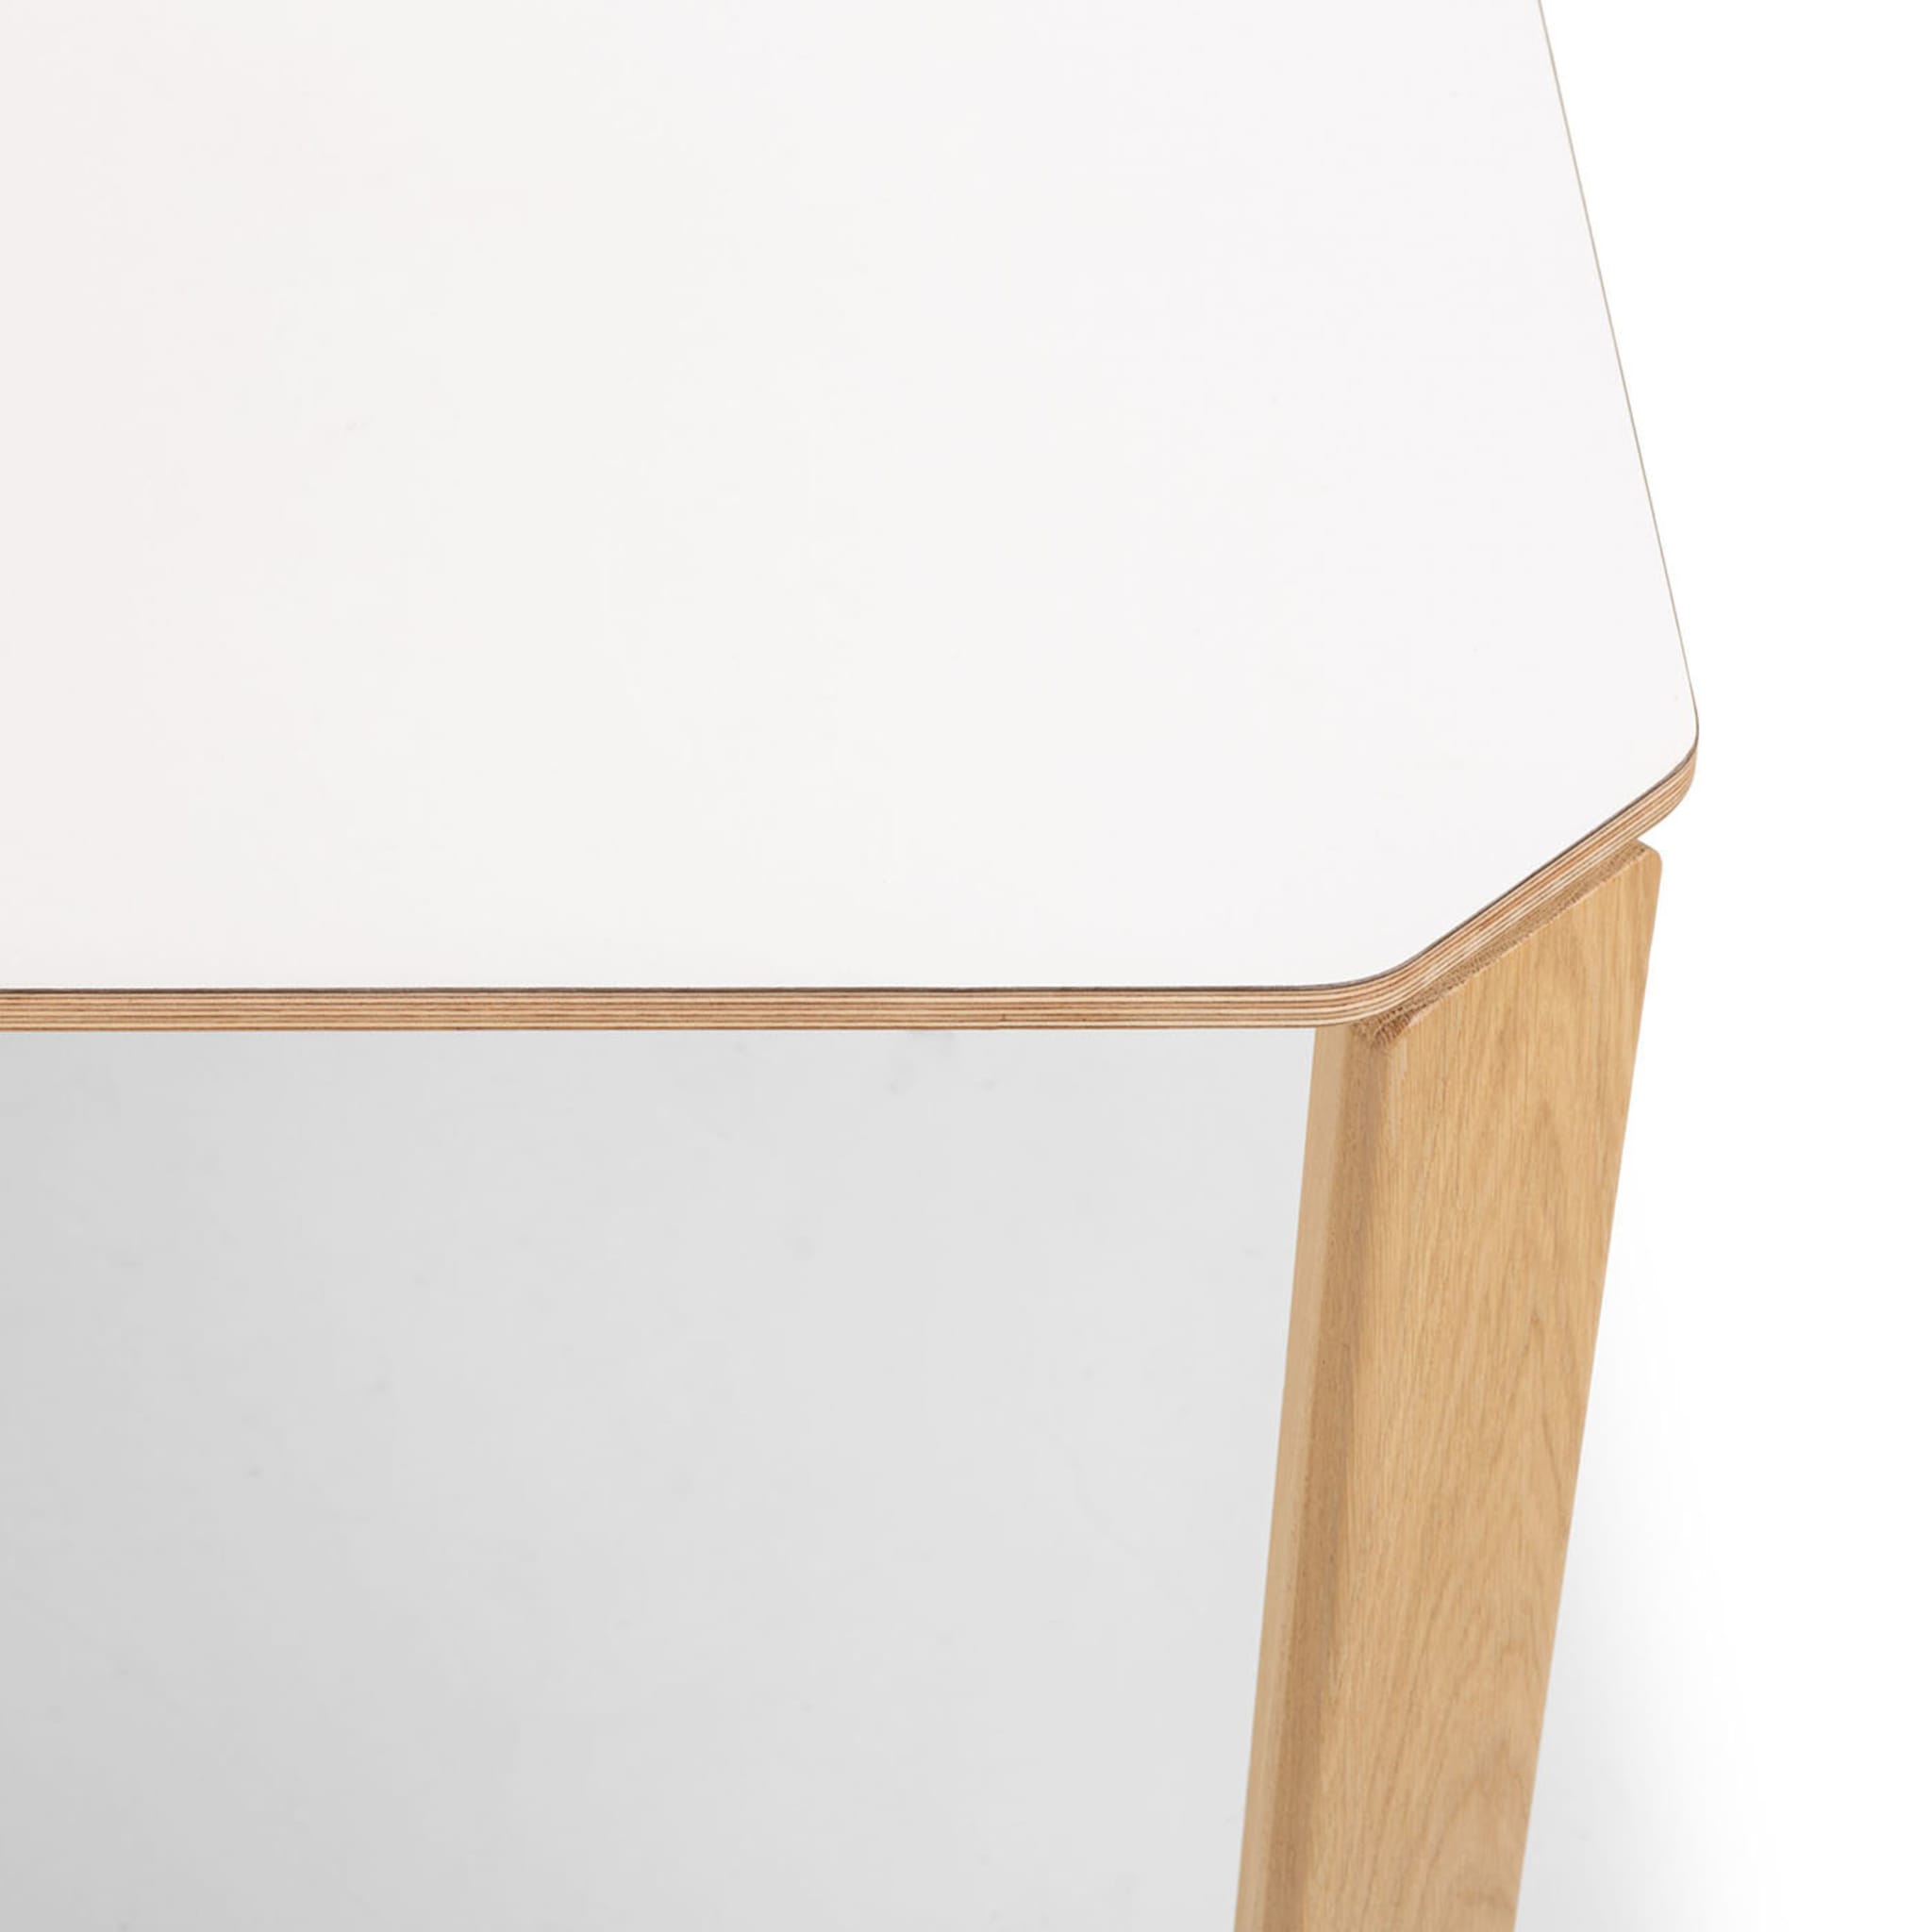 Ermete White Narrow XL Rectangular Table  - Alternative view 3